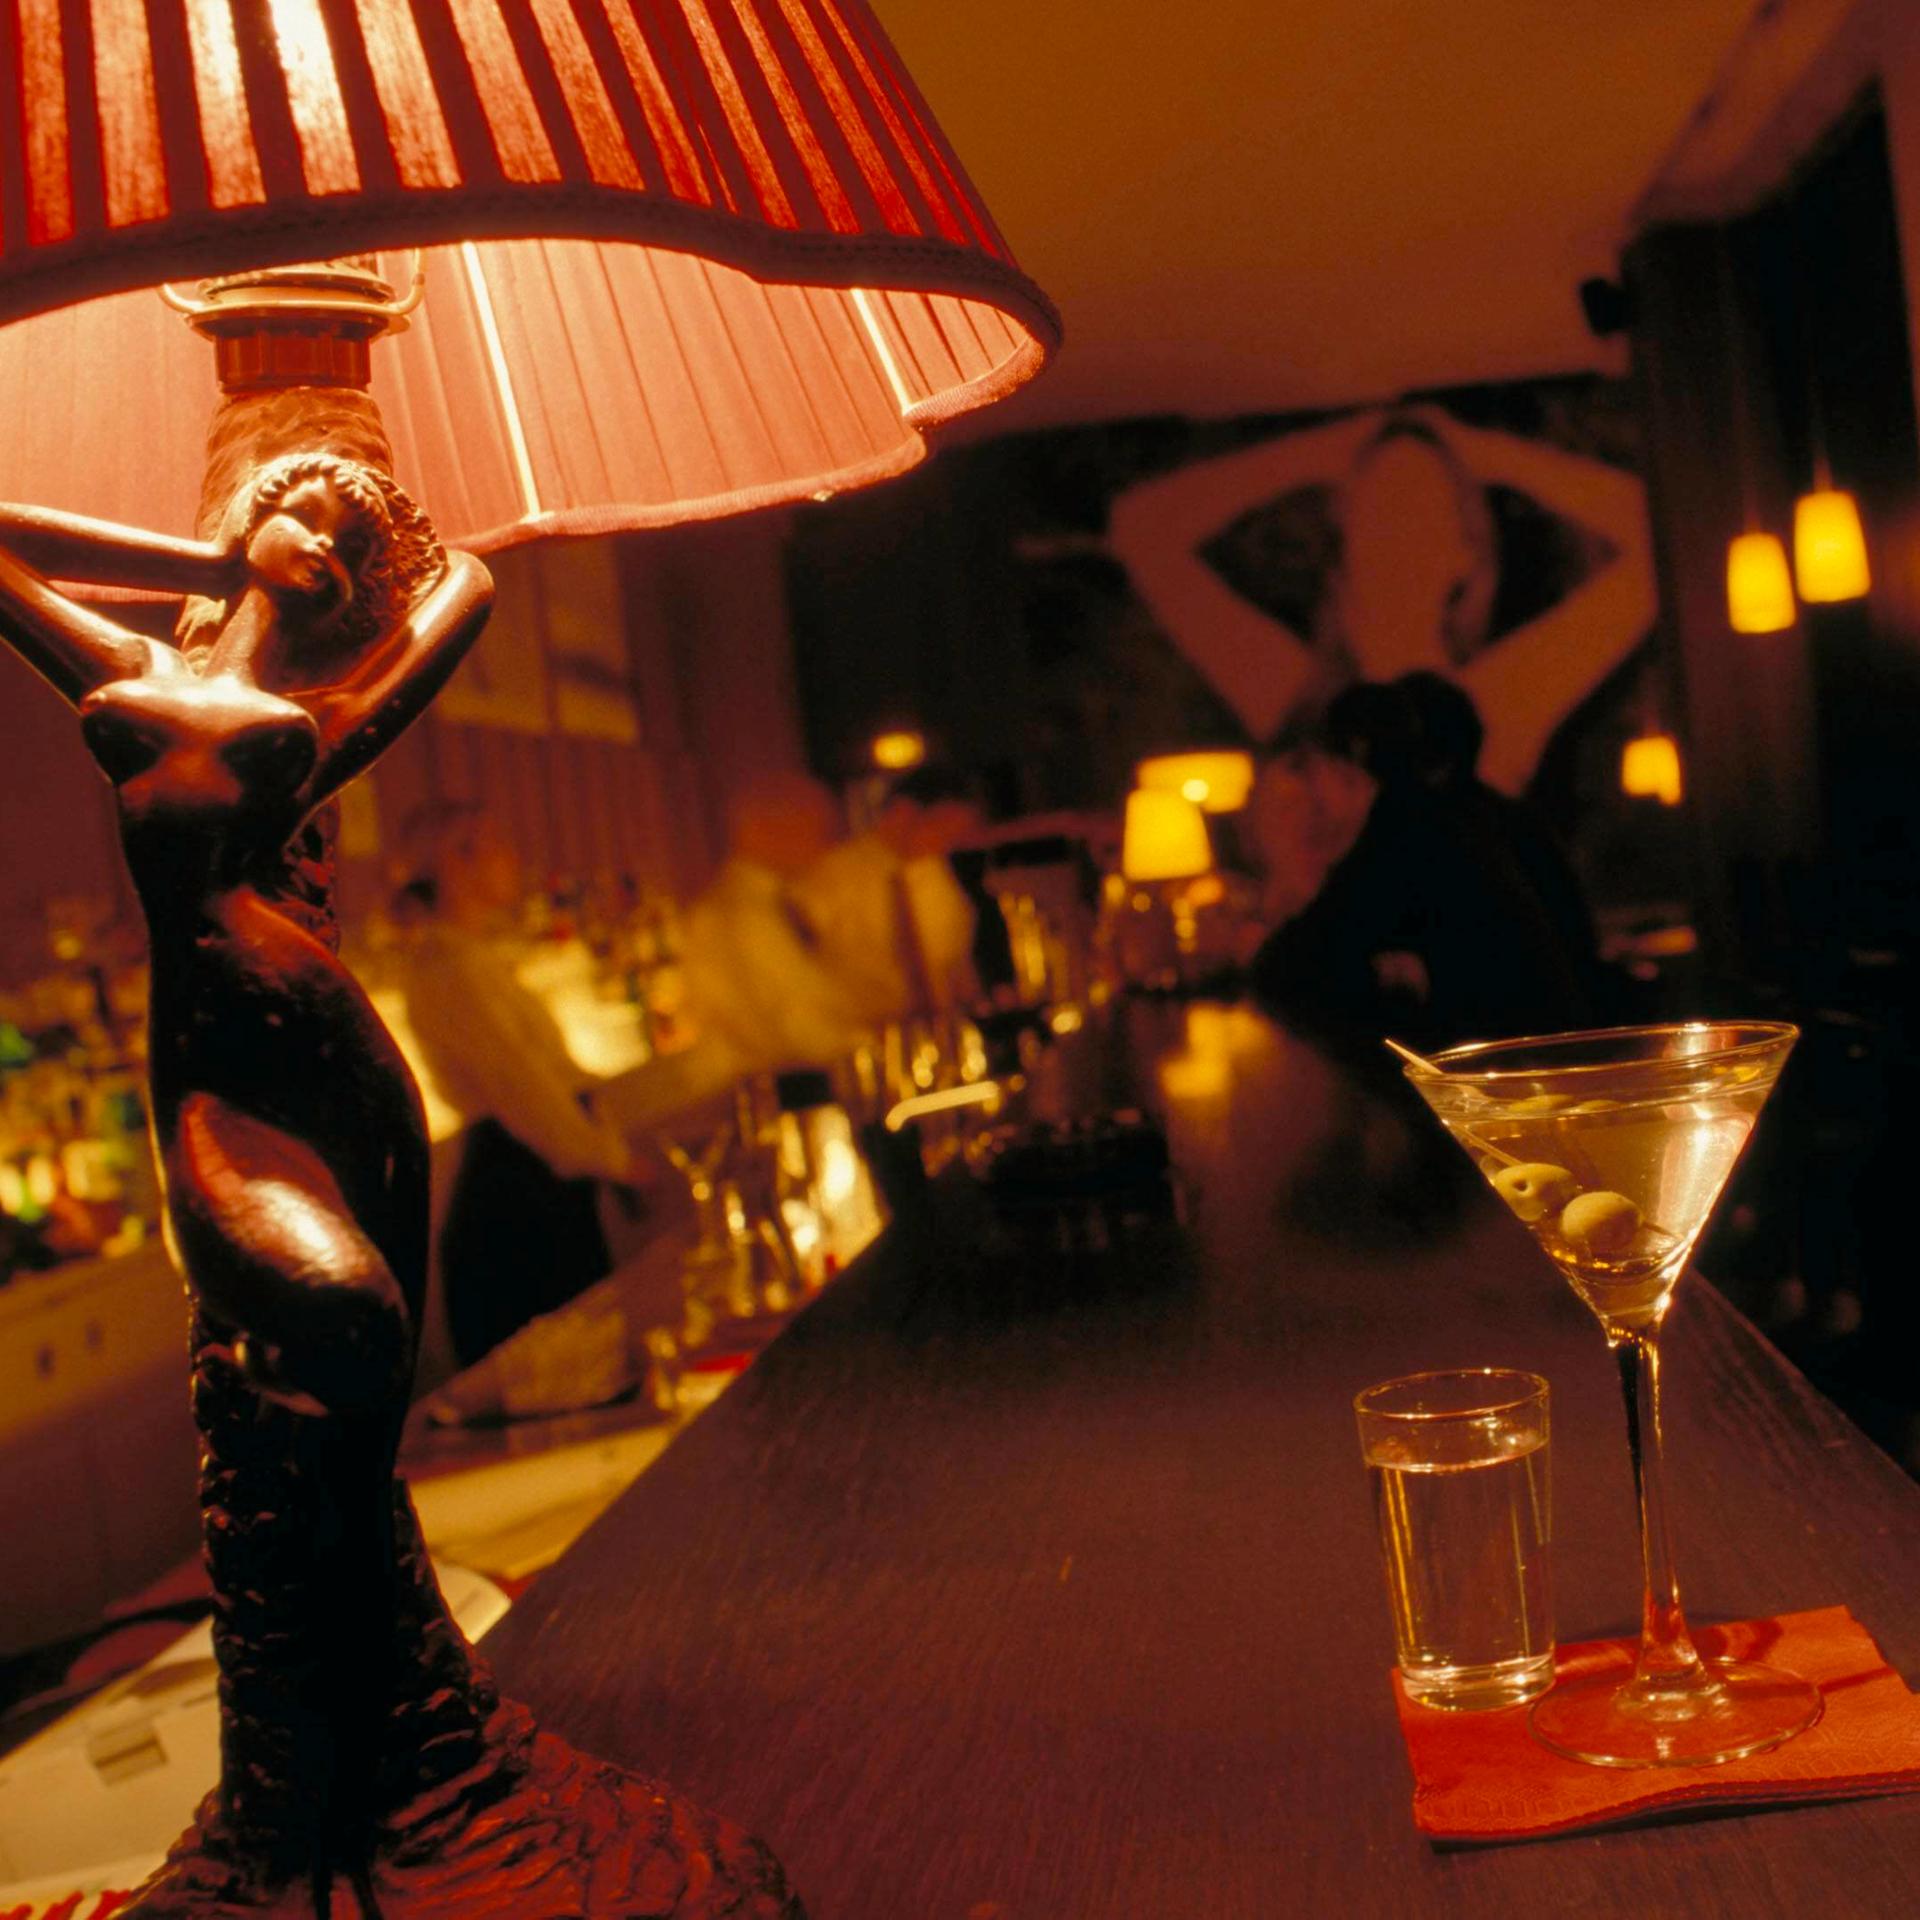 Auf einem Tresen in einer Bar steht ein Martiniglas. Daneben eine Tischlampe, deren hölzerner Sockel die Form einer Frau hat.